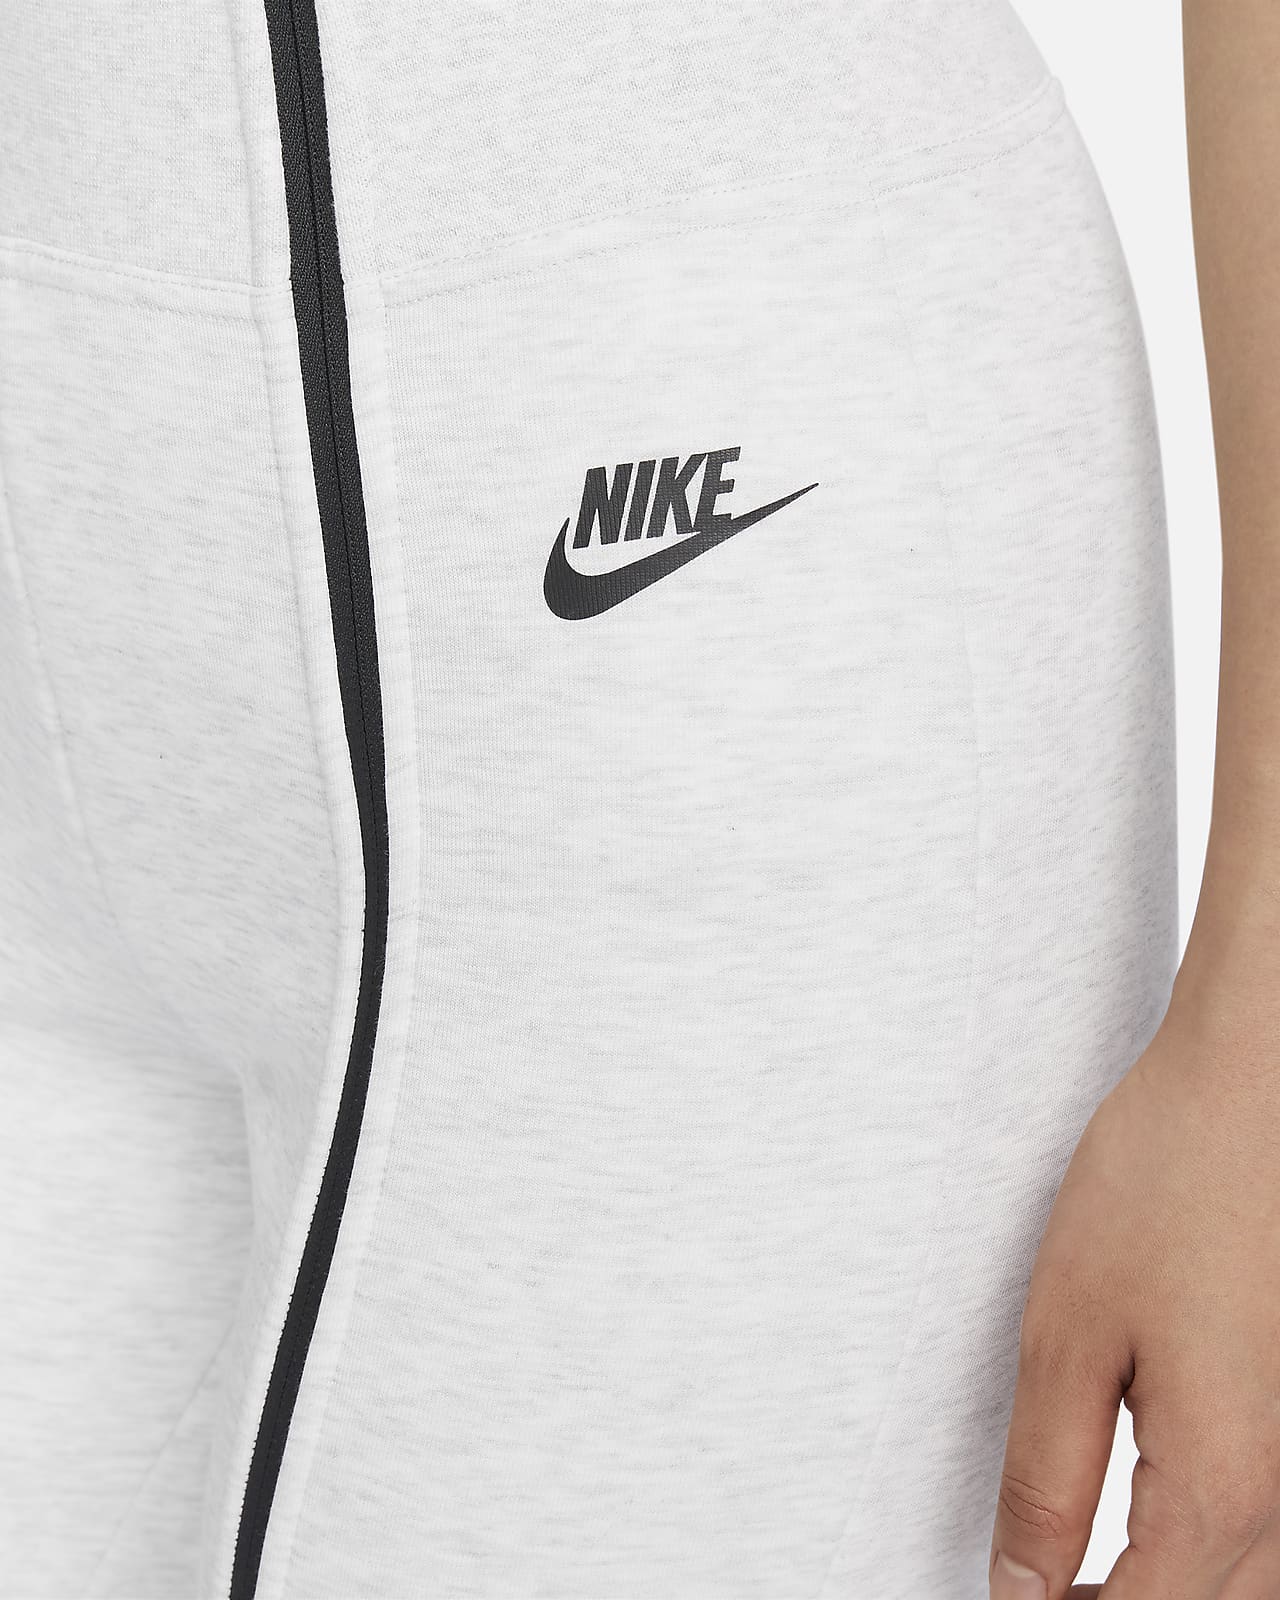 Nike Sportswear Tech Fleece Women's High-Waisted Slim Zip Trousers